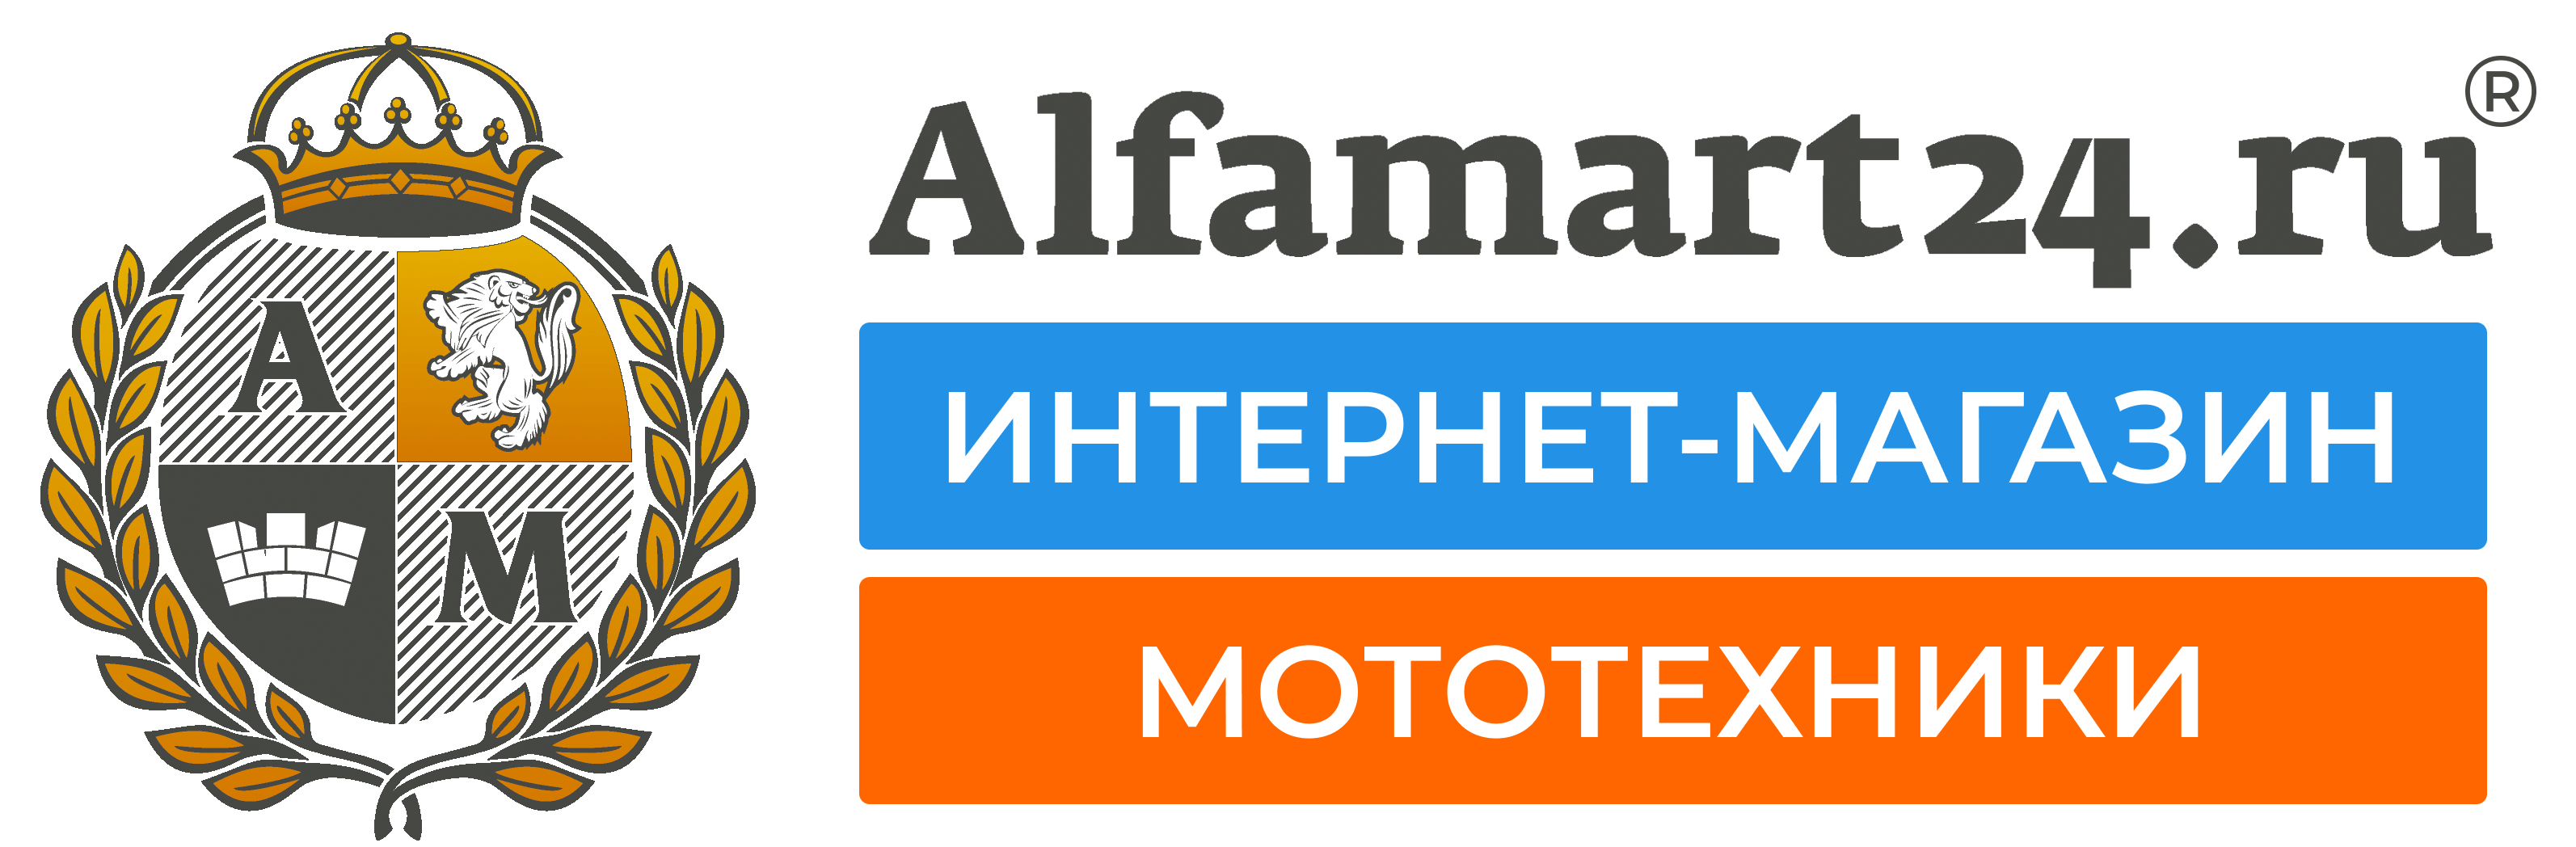 Alfamart24.ru - ИНТЕРНЕТ-МАГАЗИН МОТОТЕХНИКИ